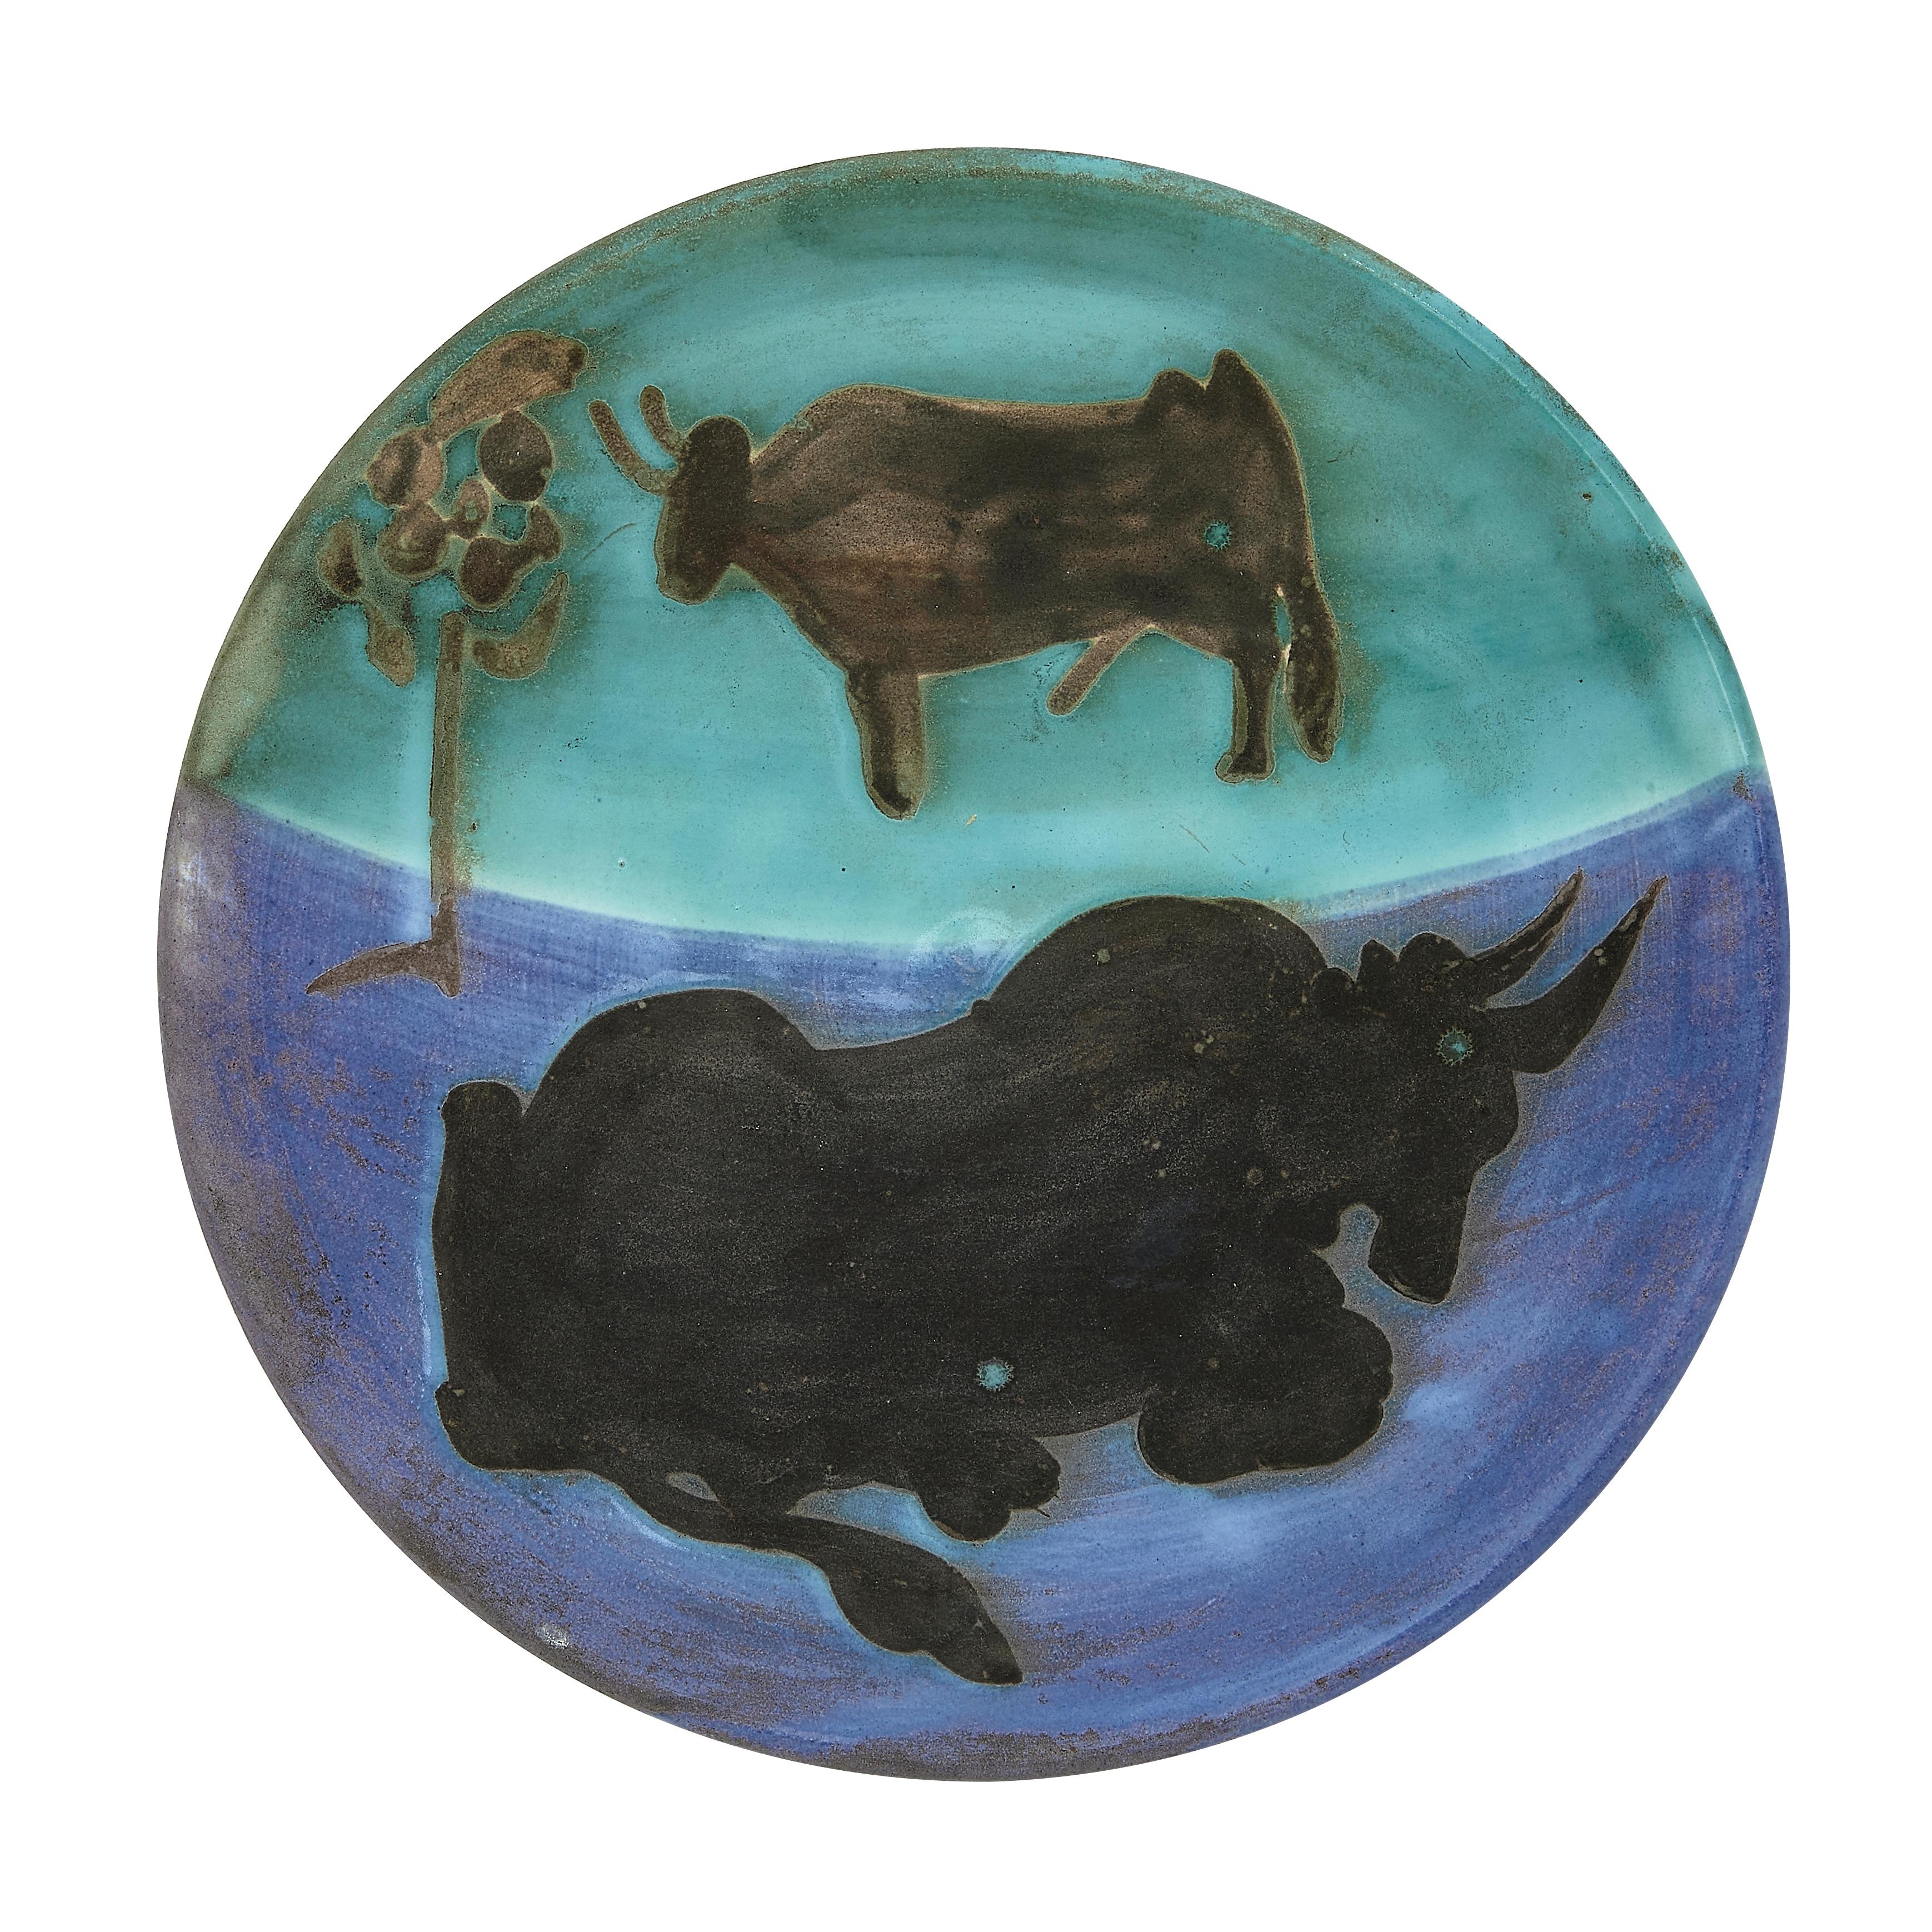 Pablo Picasso 'Toros' (A. R. 161) Bull Madoura Plate